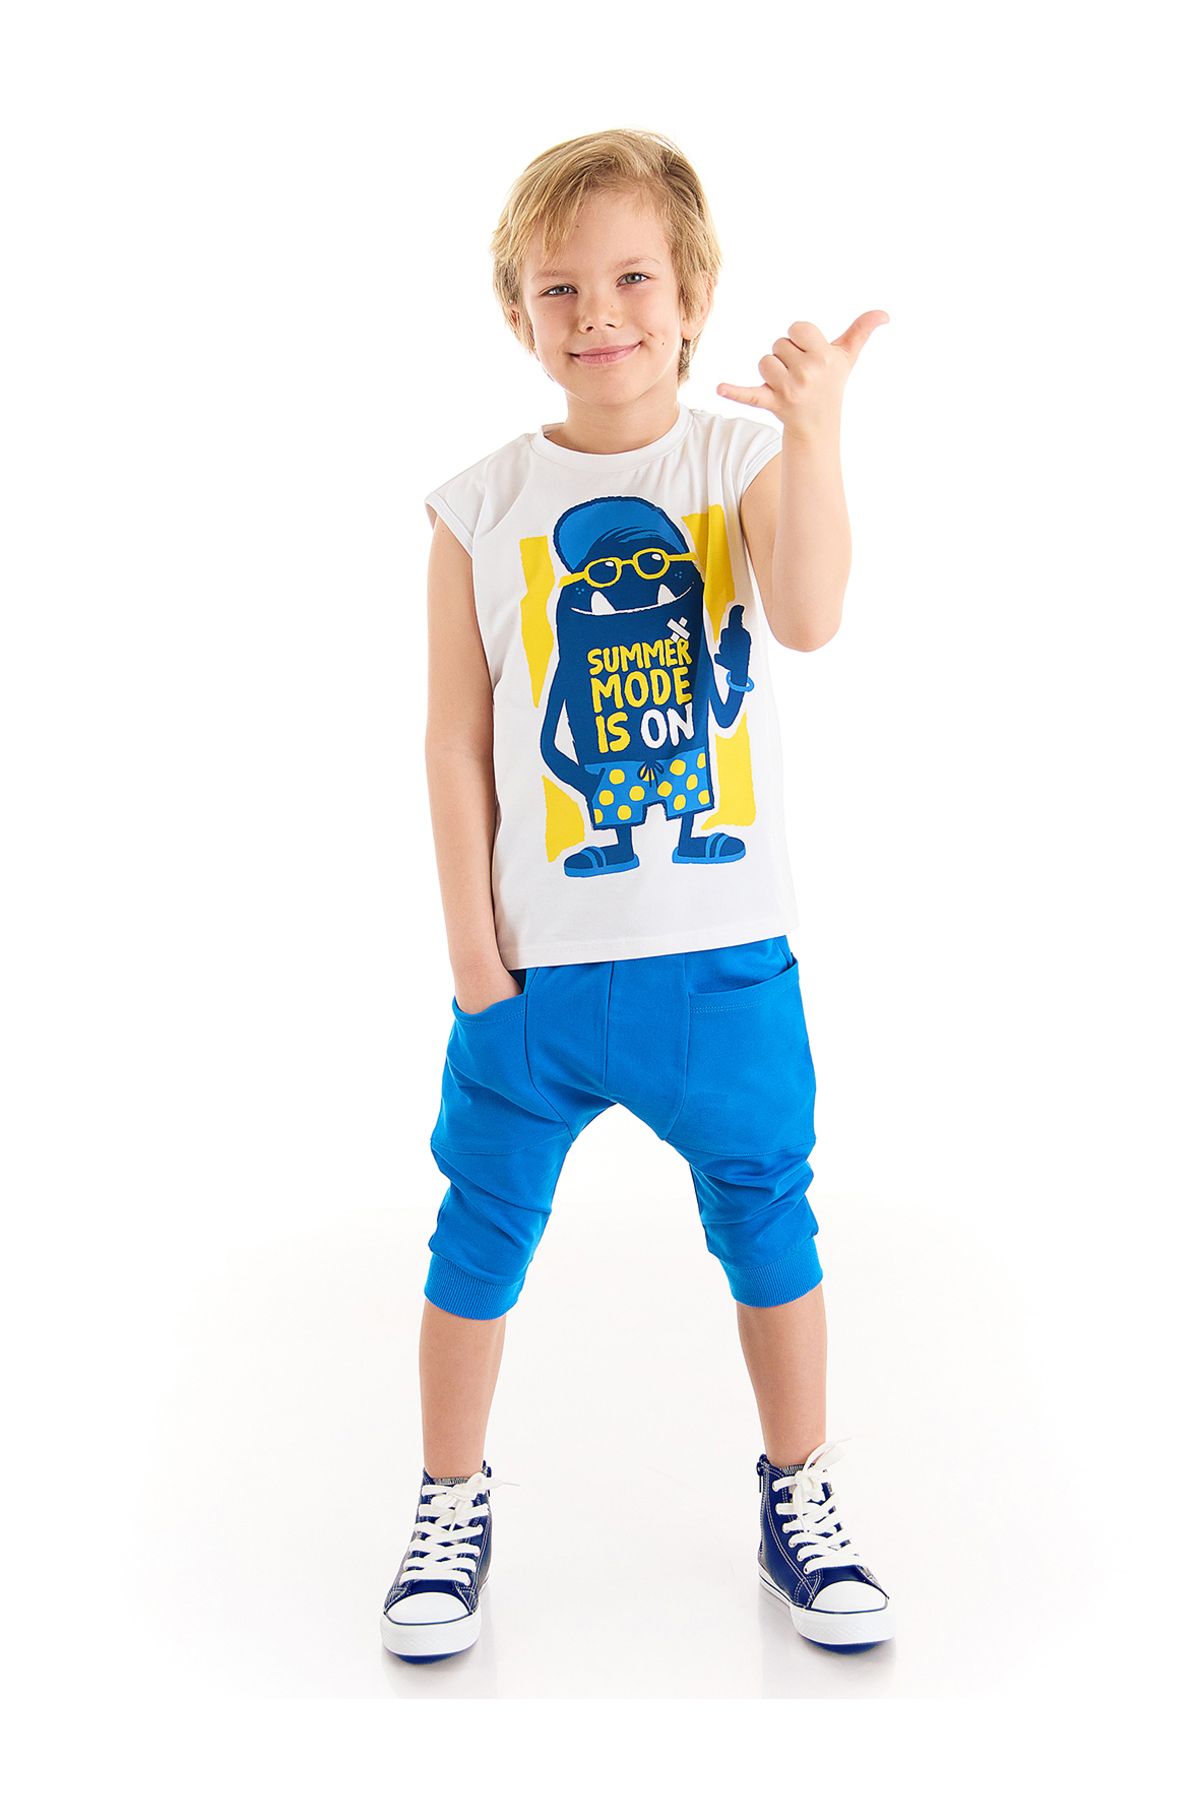 Denokids Yaz Modu Erkek Çocuk T-shirt Kapri Şort Takım